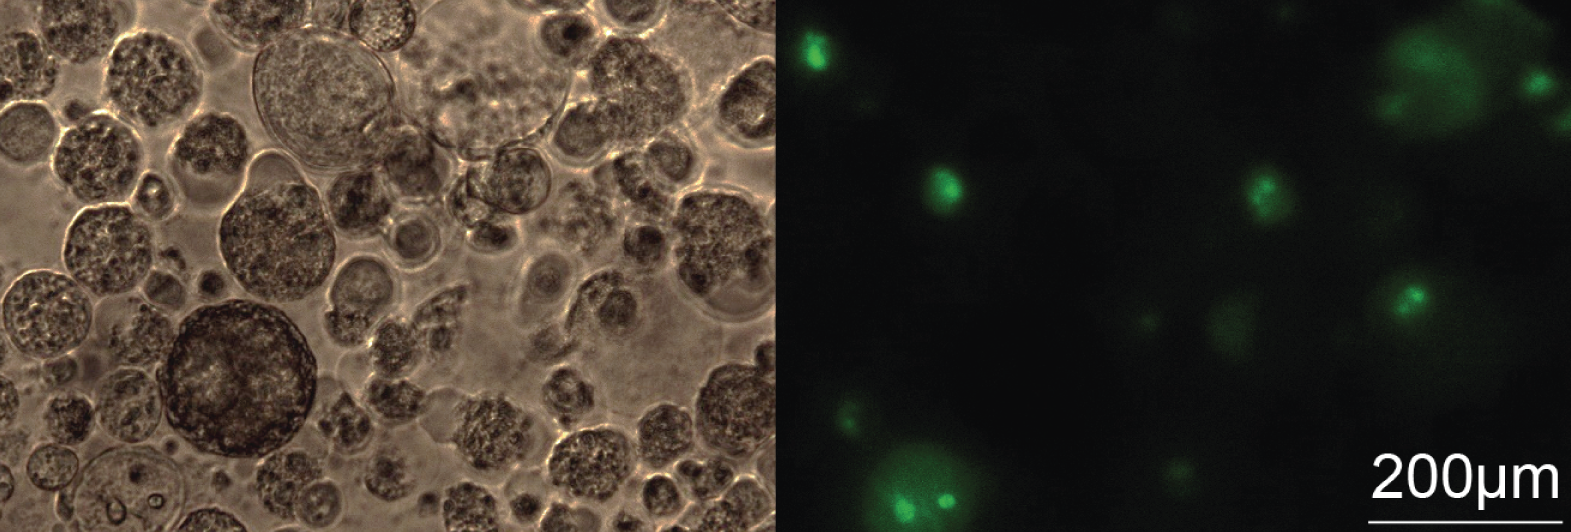 zwei Mikroskopiebilder von Lungenkrebsspheroiden